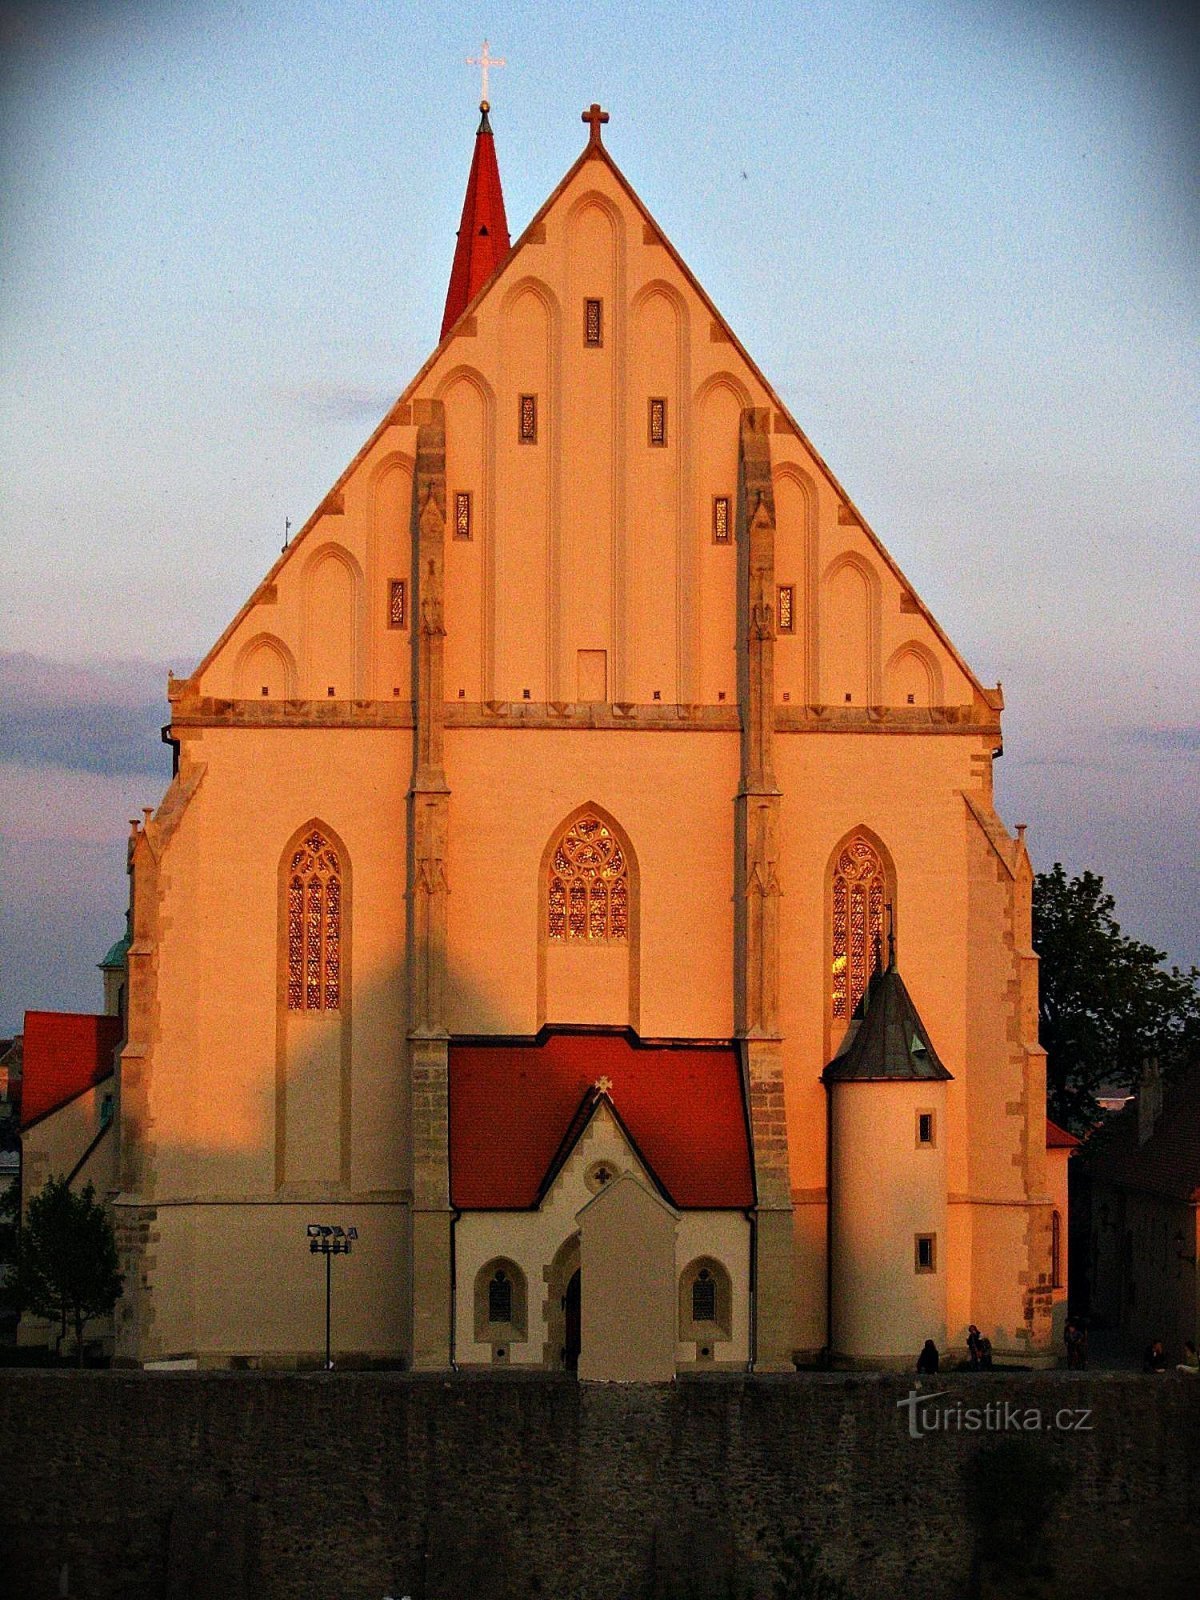 Nhà thờ đẹp nhất ở Znojmo